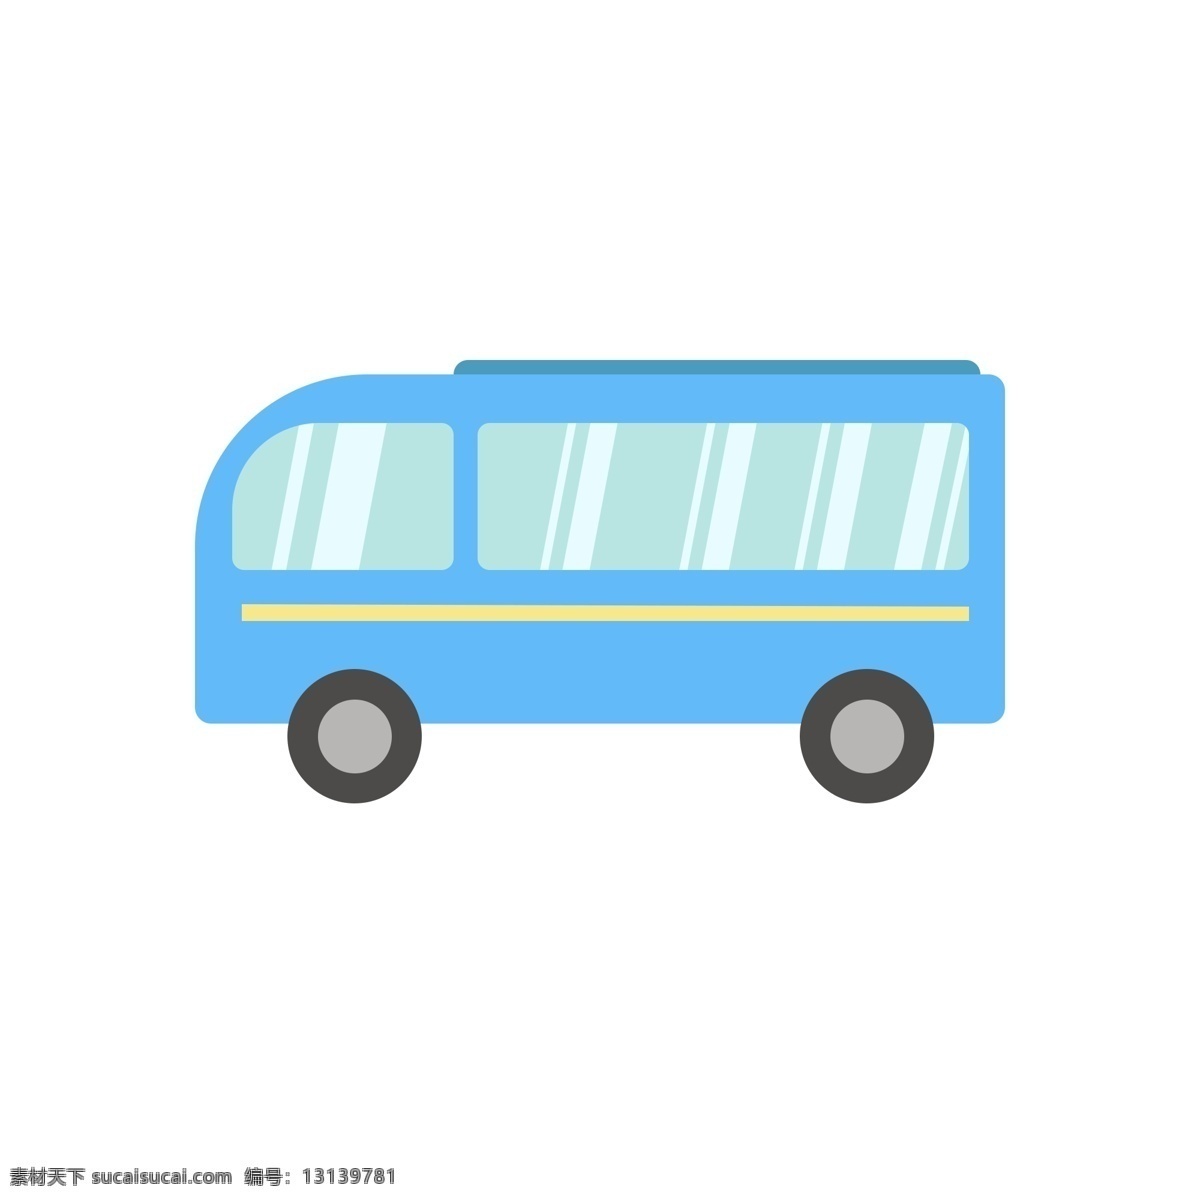 蓝色 小巴 车 可爱 汽车 插画 巴士 扁平 矢量 卡通 交通工具 出行 方便 行驶 小巴车 黄色 玻璃